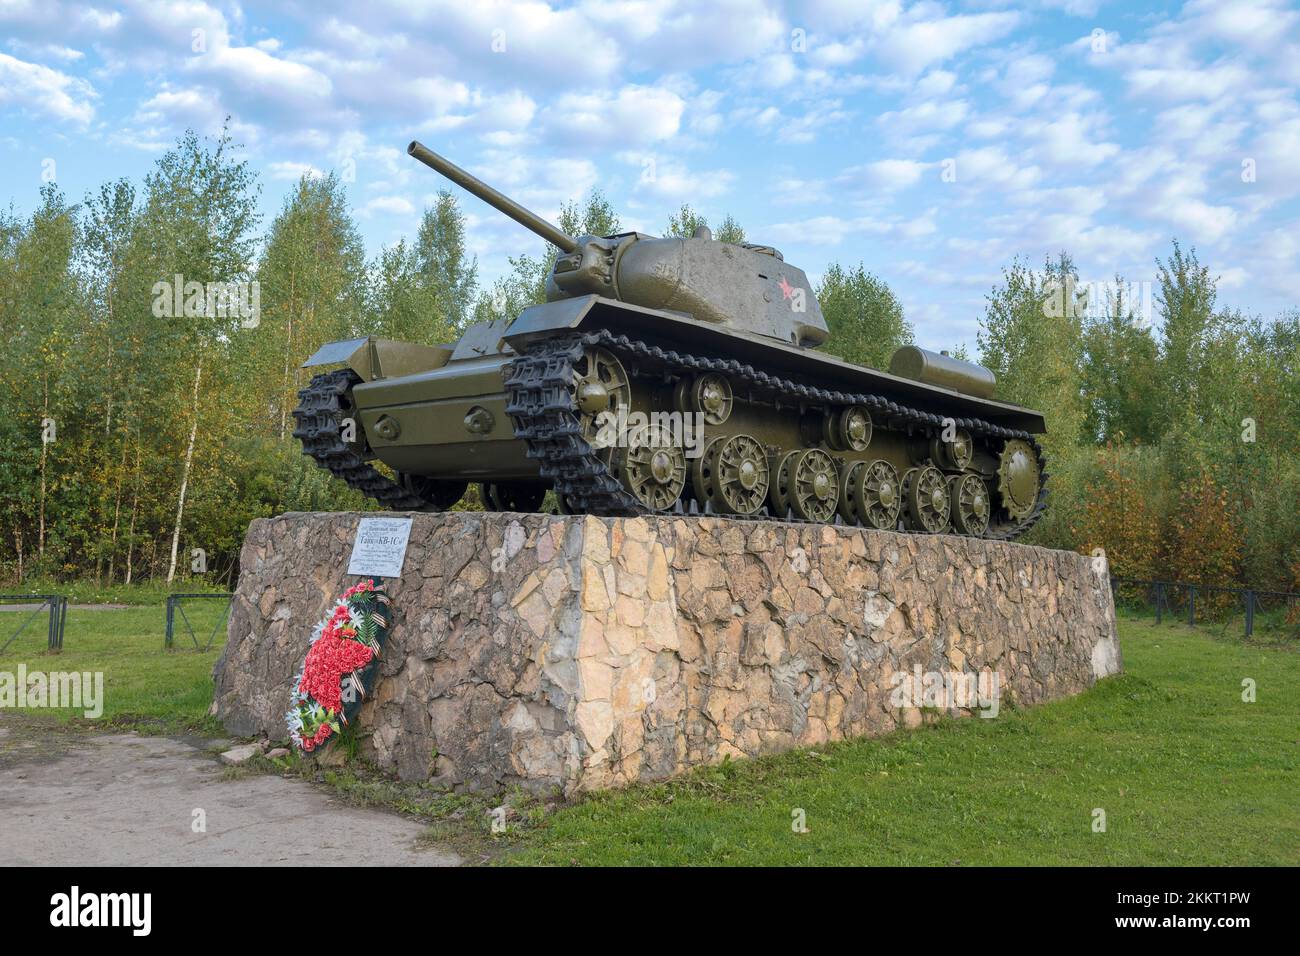 PARFINO, RUSSLAND - 11. SEPTEMBER 2021: Sowjetischer Panzer KV-1S auf einem Sockel an einem Septembernachmittag. Denkmal zu Ehren der Verteidiger des Motherlan Stockfoto